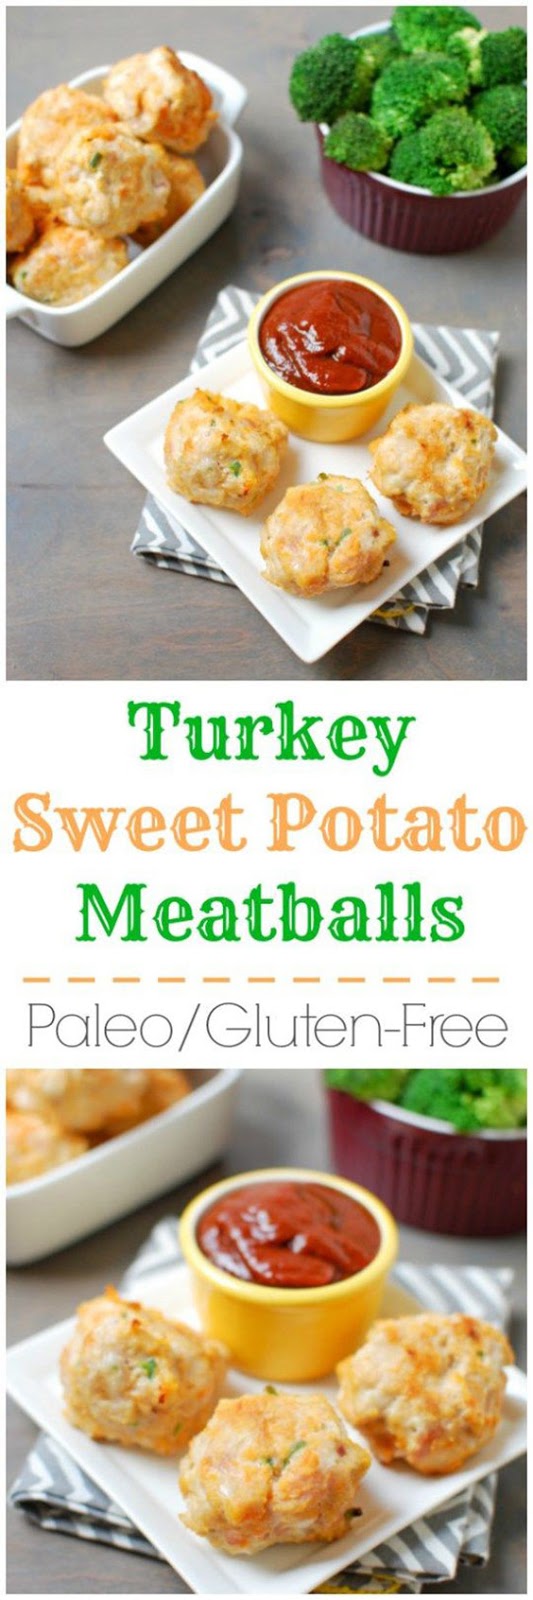 Paleo Turkey Sweet Potato Meatballs